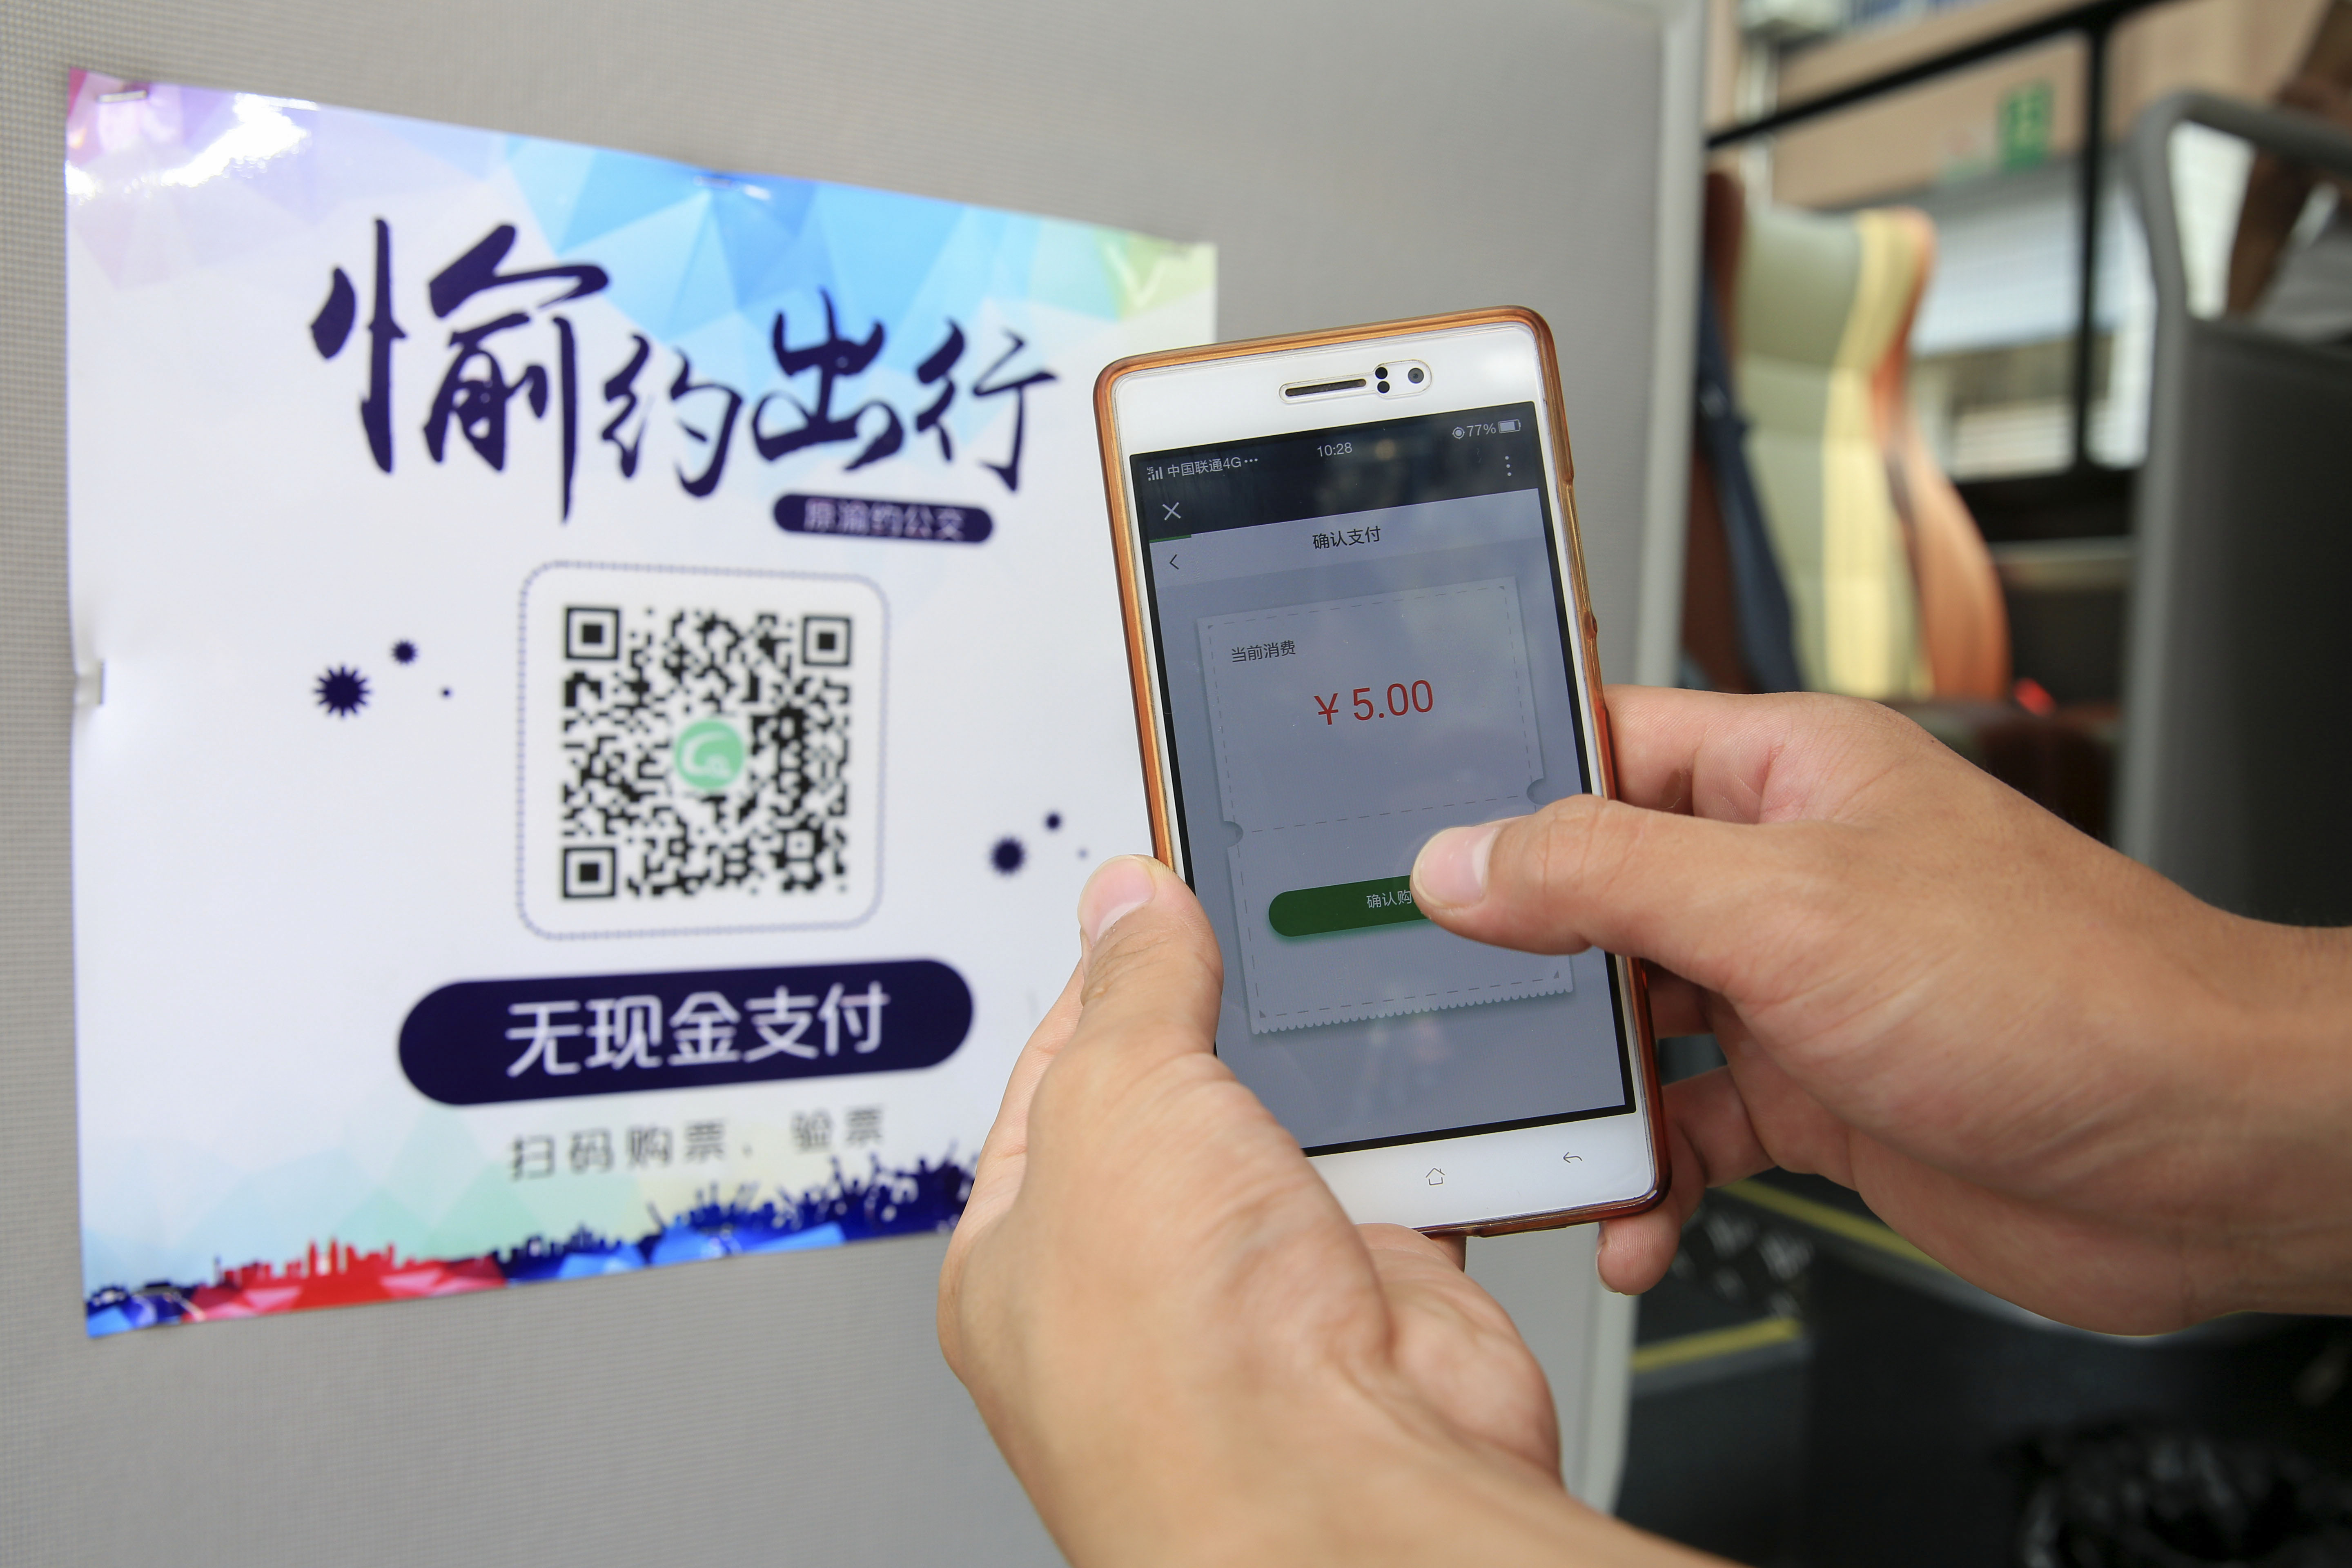 2017年8月3日 ,乘客在重庆市北碚区使用手机扫描二维码支付公交车费.